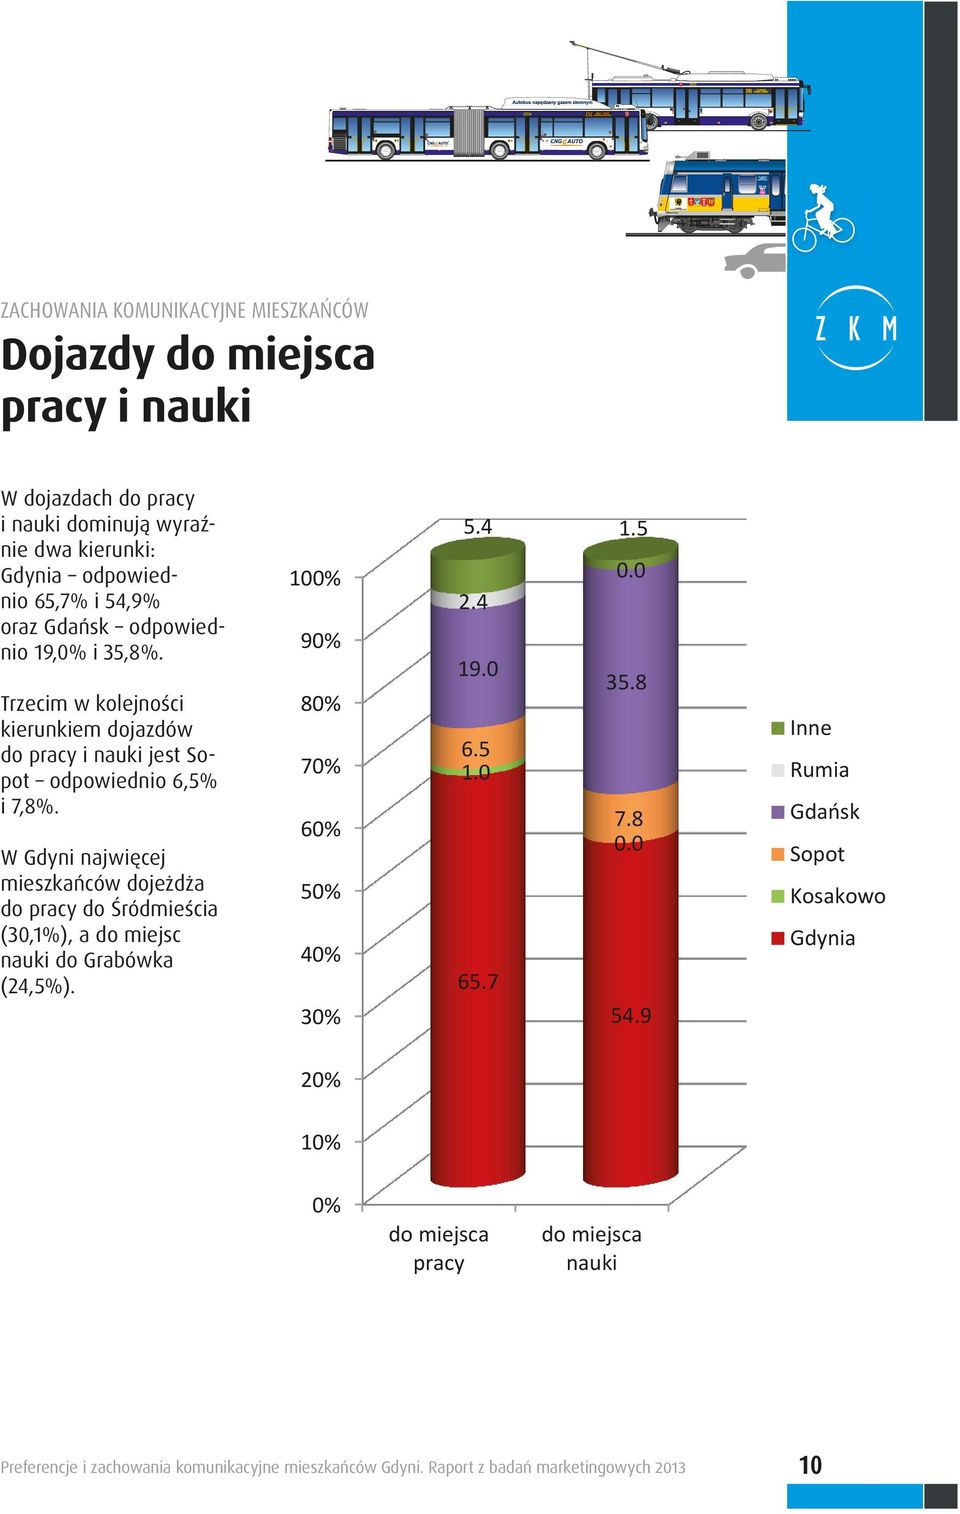 W Gdyni najwięcej mieszkańców dojeżdża do pracy do Śródmieścia (30,1%), a do miejsc nauki do Grabówka (24,5%). 100% 90% 80% 70% 60% 50% 40% 30% 5.4 1.5 0.0 2.4 19.0 35.